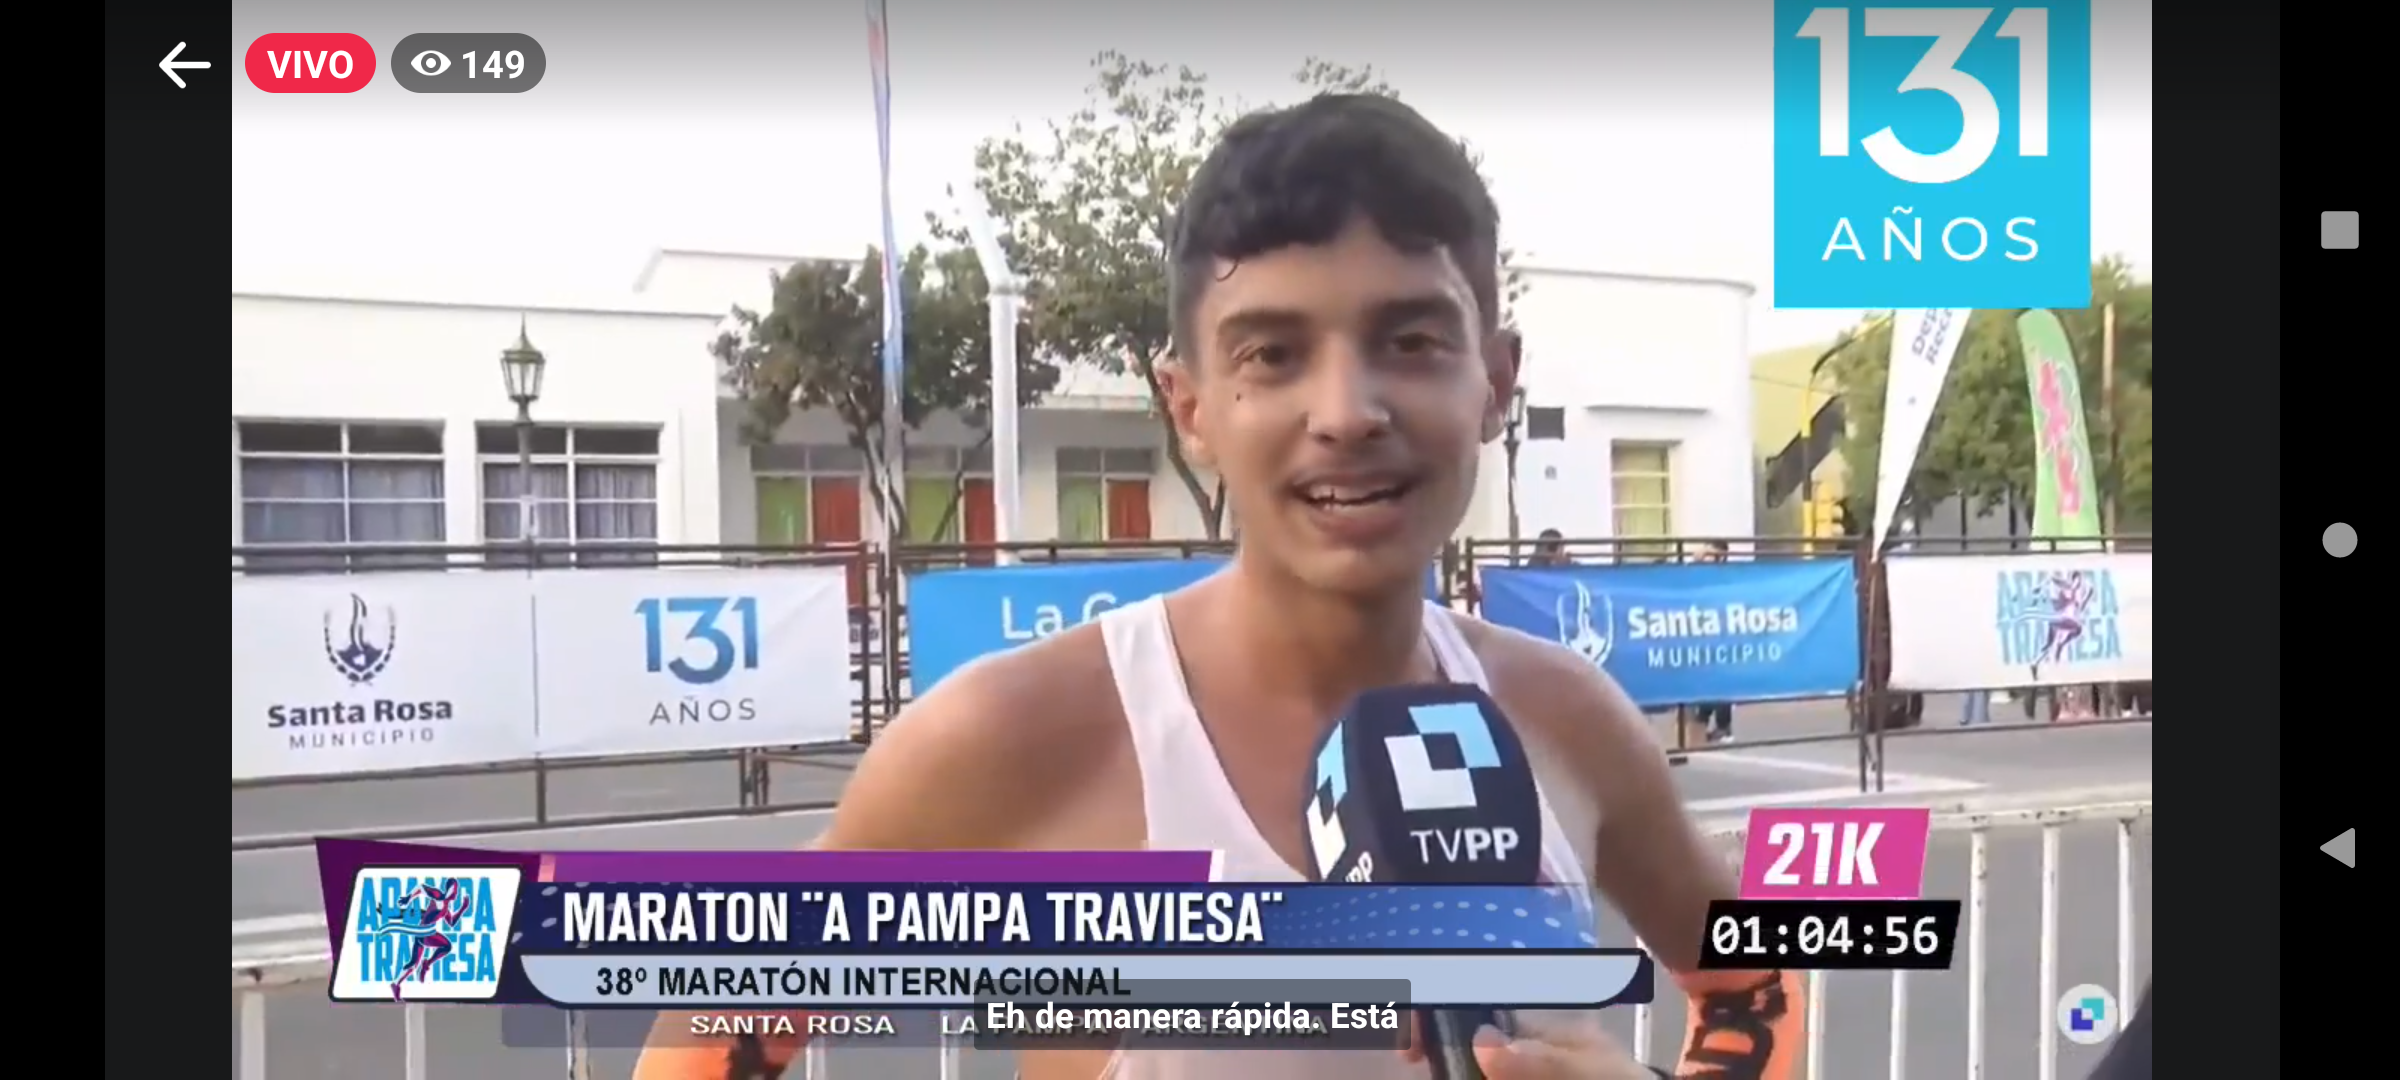 A Pampa Traviesa: Erario ganó con récord de circuito en 21k